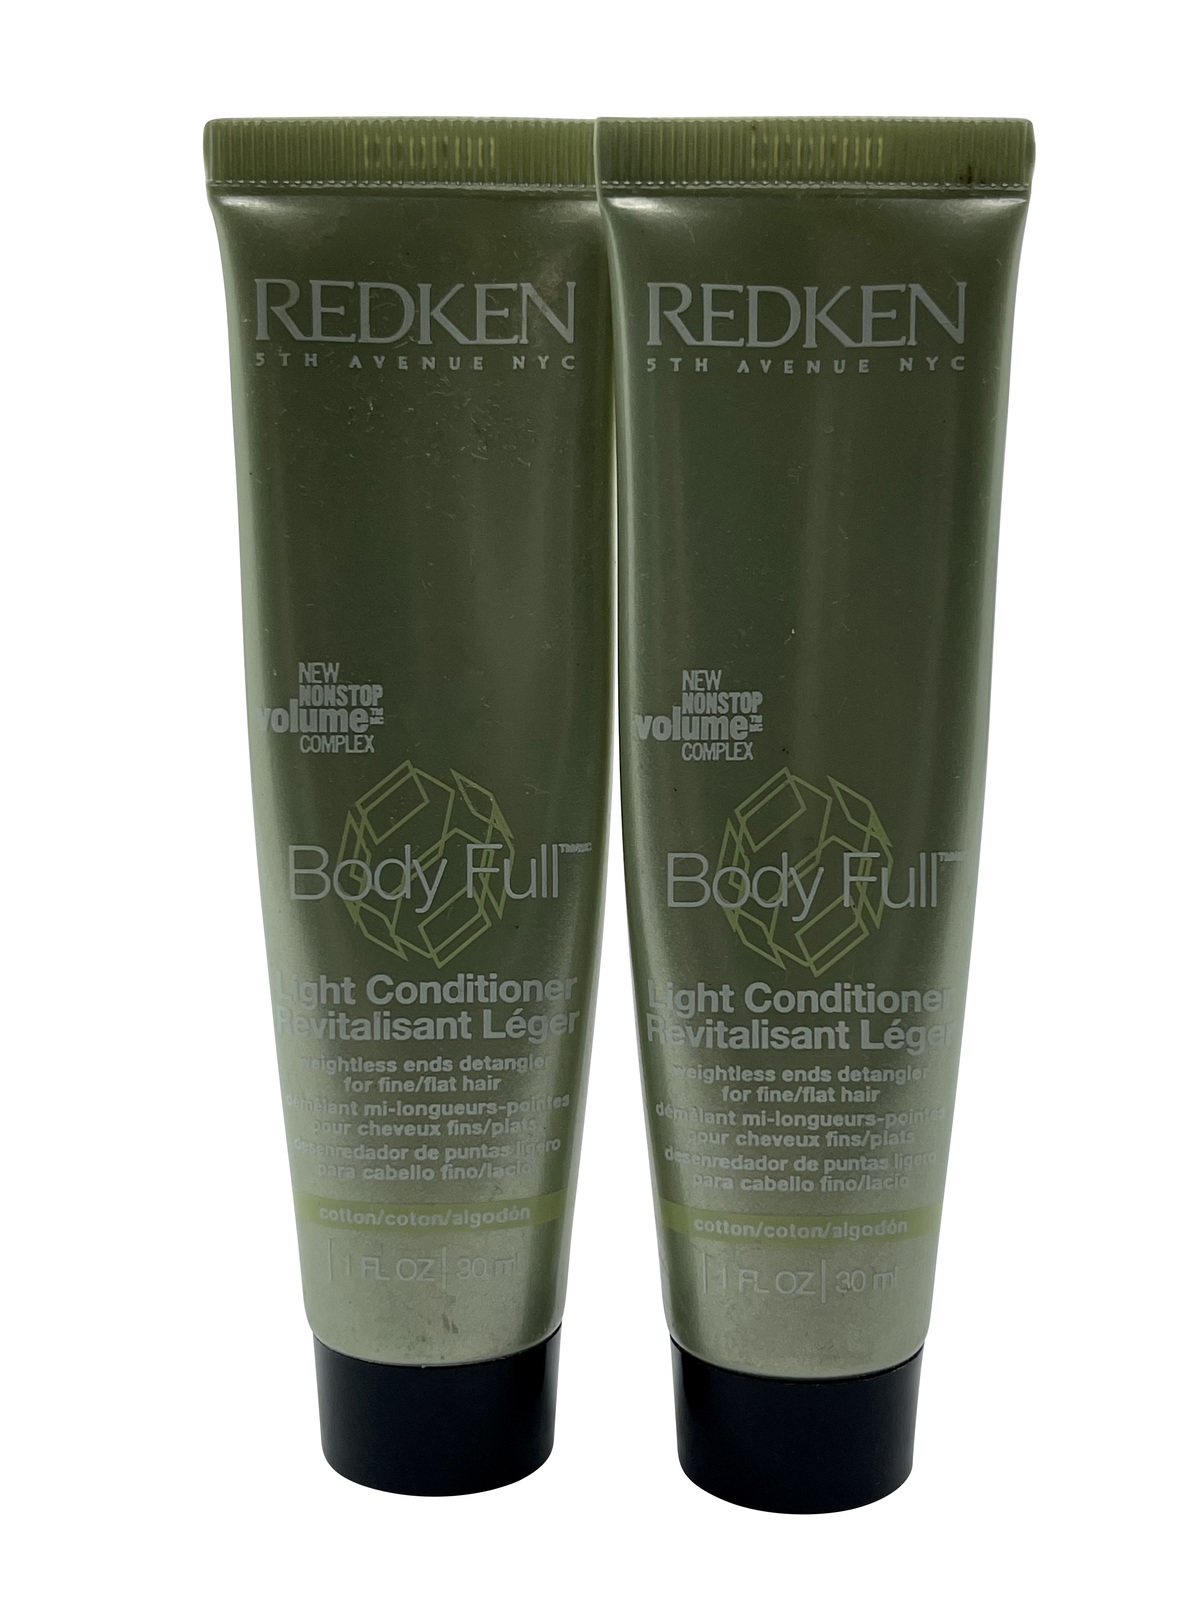 Redken Body Full Light Conditioner Fine & Flat Hair 1 oz. Set of 2 - $6.35